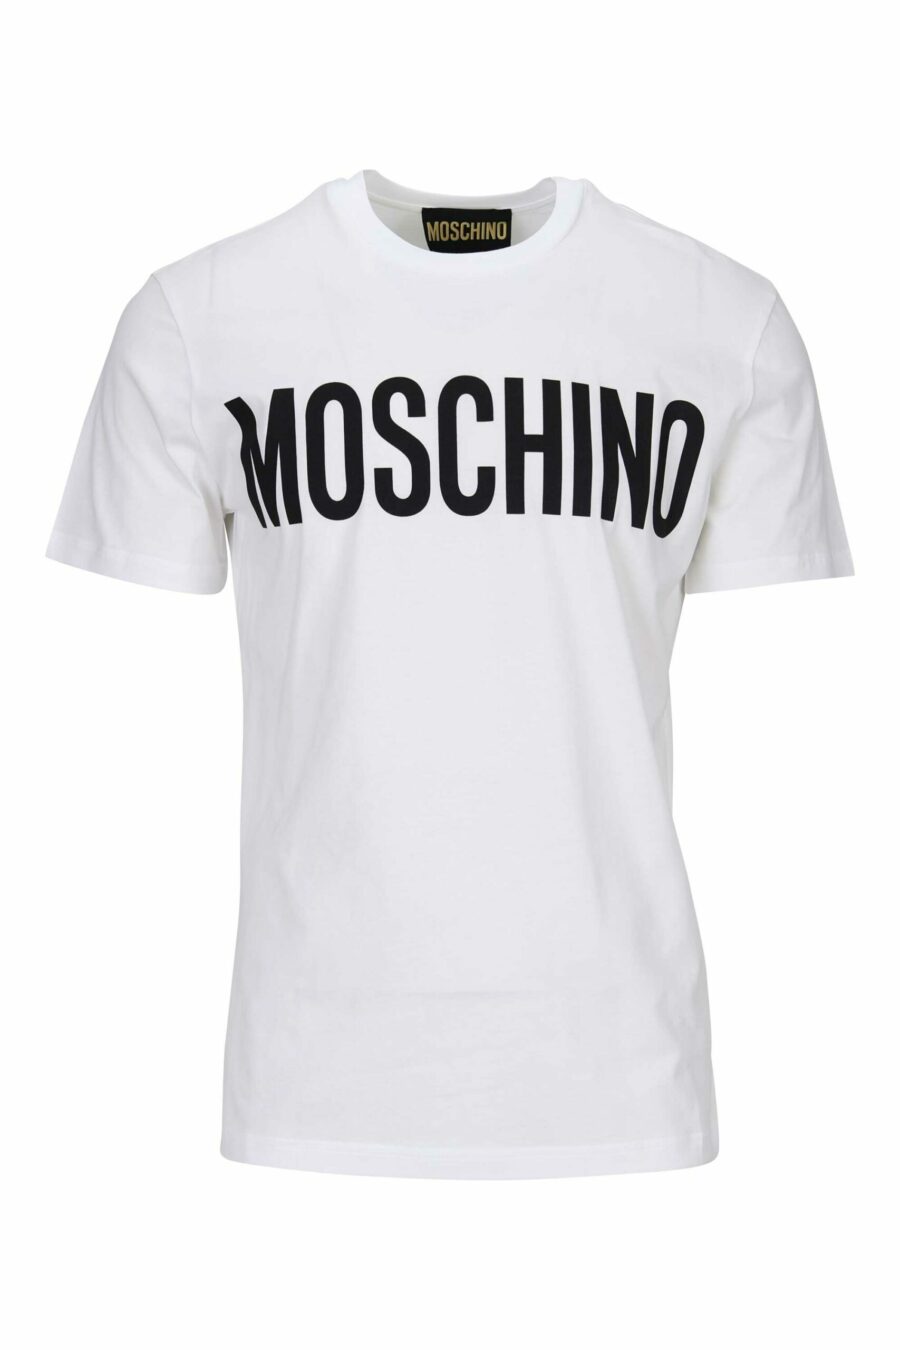 Camiseta blanca de algodón orgánico con maxilogo negro clásico - 667113391403 scaled